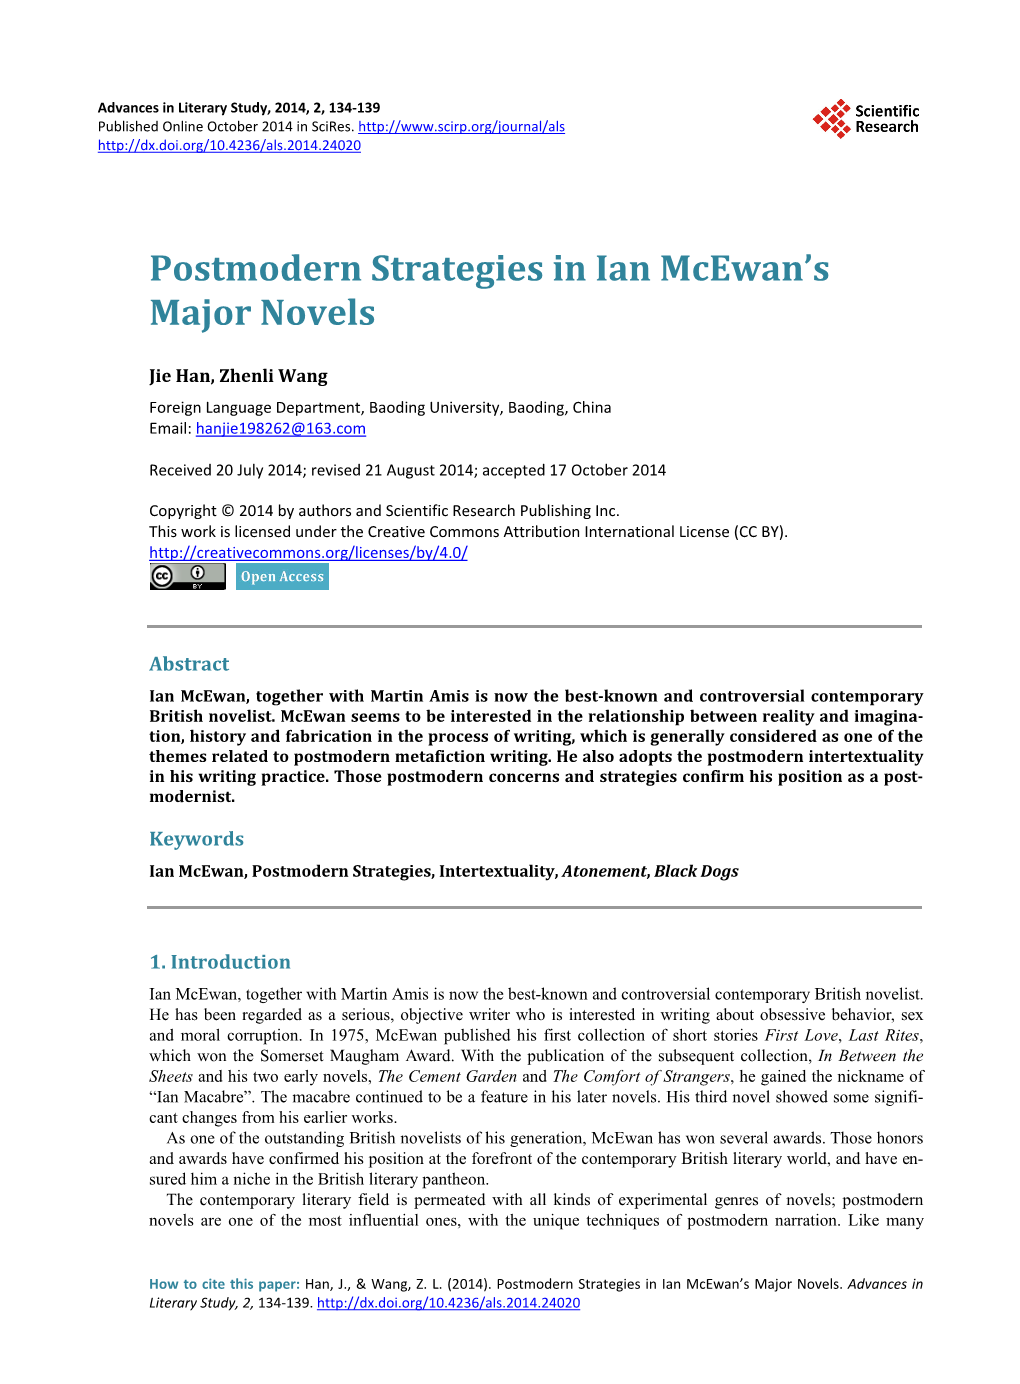 Postmodern Strategies in Ian Mcewan's Major Novels